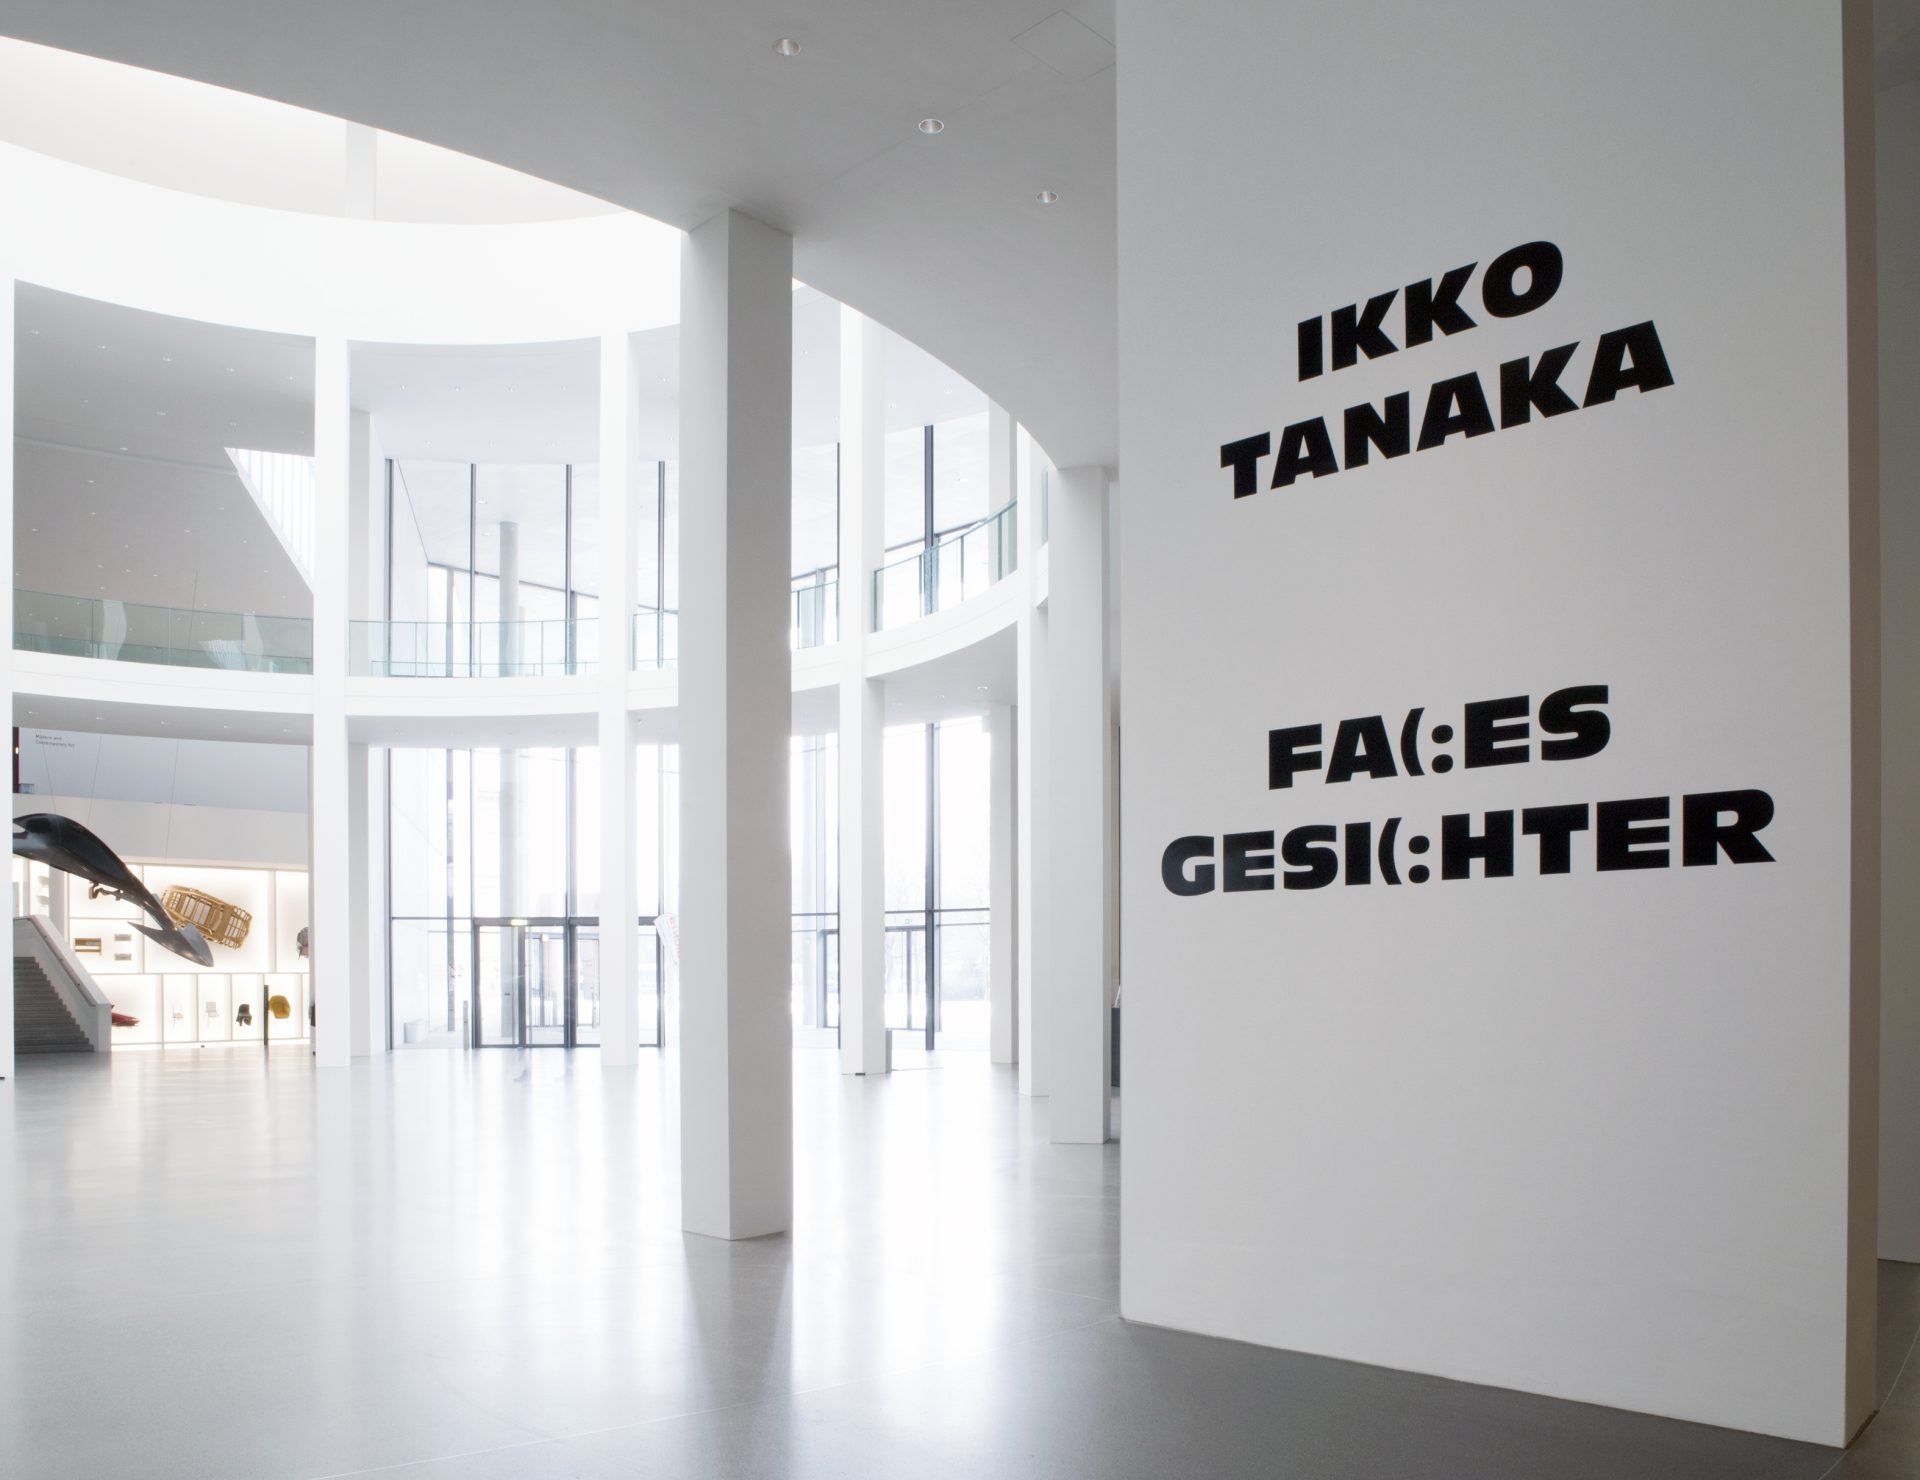 Wand mit Beschriftung auf Deutsch Ikko Tanaka Faces Gesichter